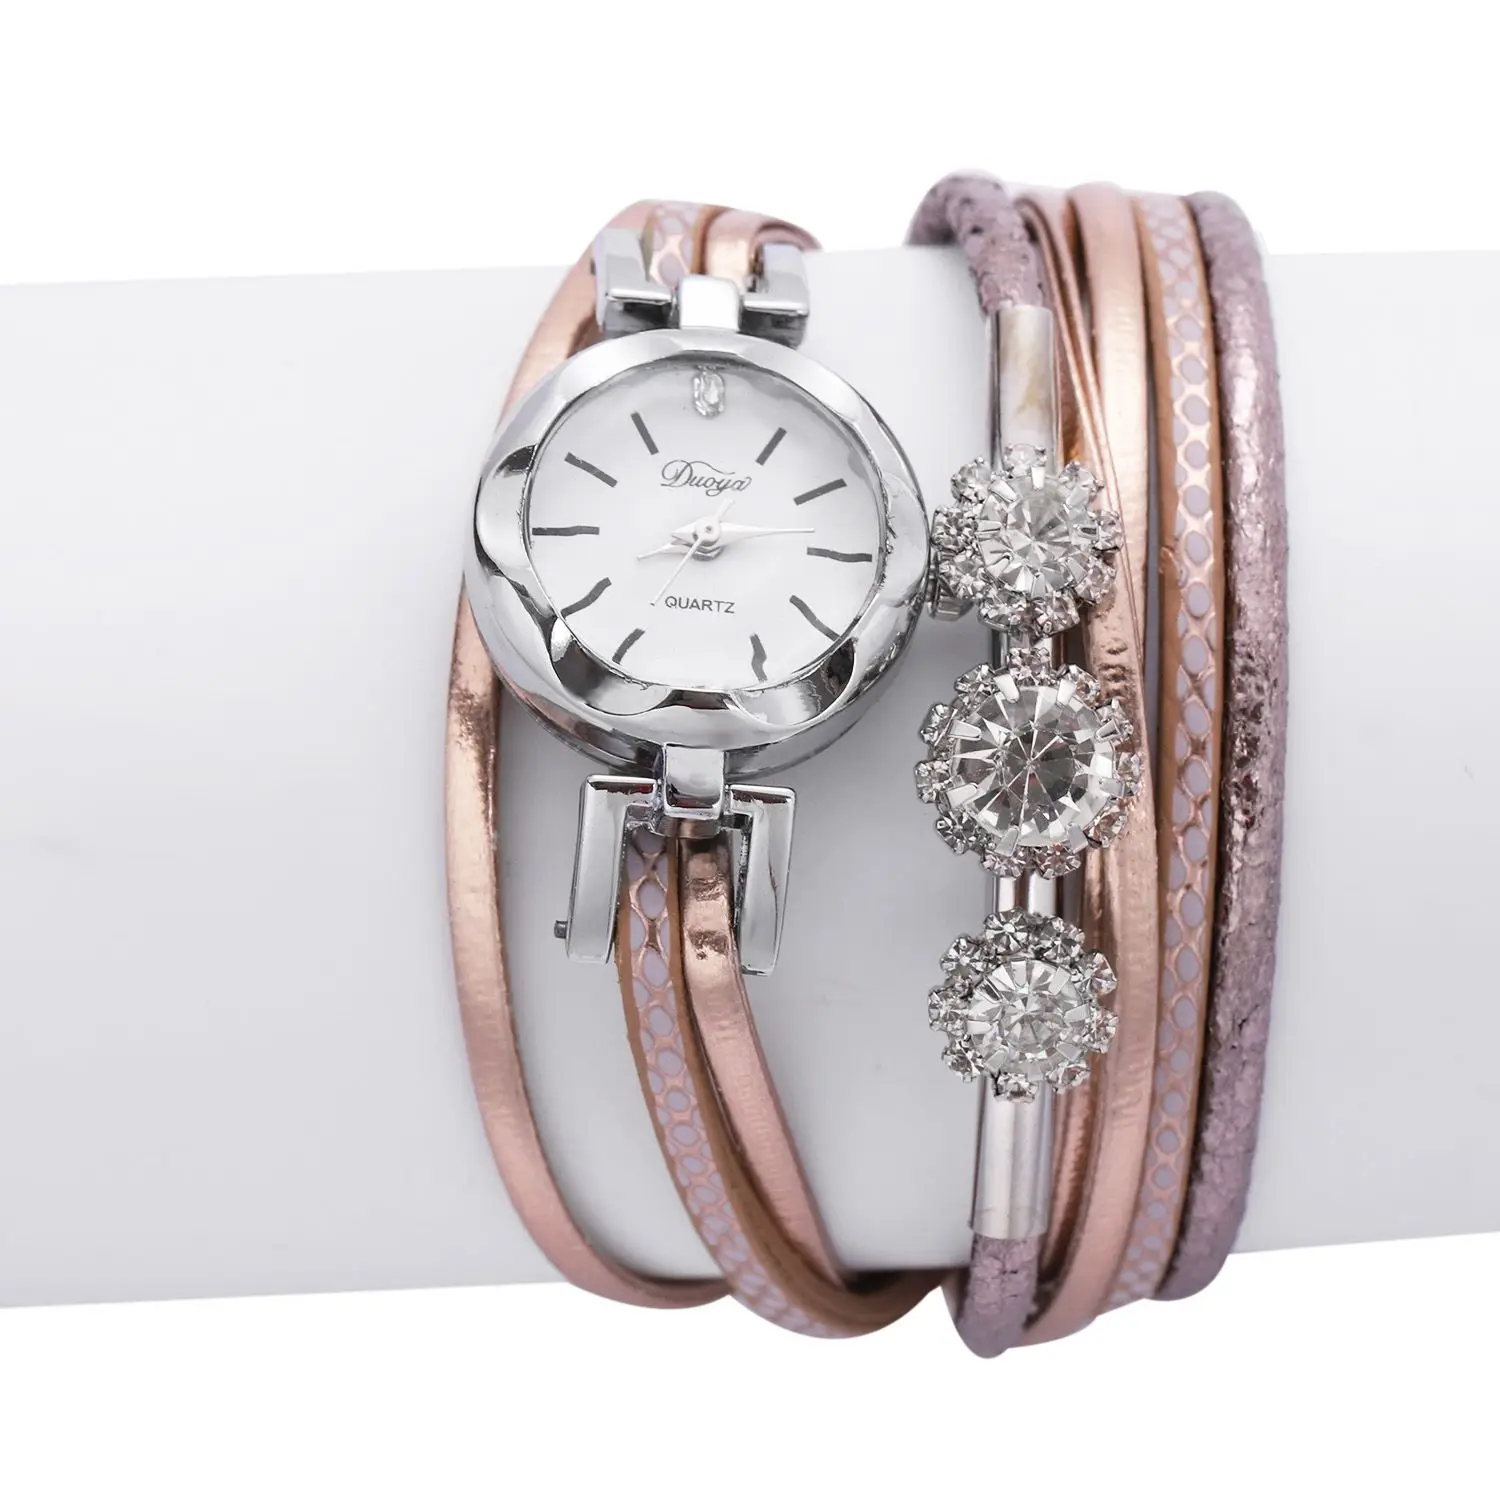 Duoya бренда браслет часы для Для женщин роскошный кристалл часы кварцевые часы модные женские Винтаж творческие наручные часы, D207